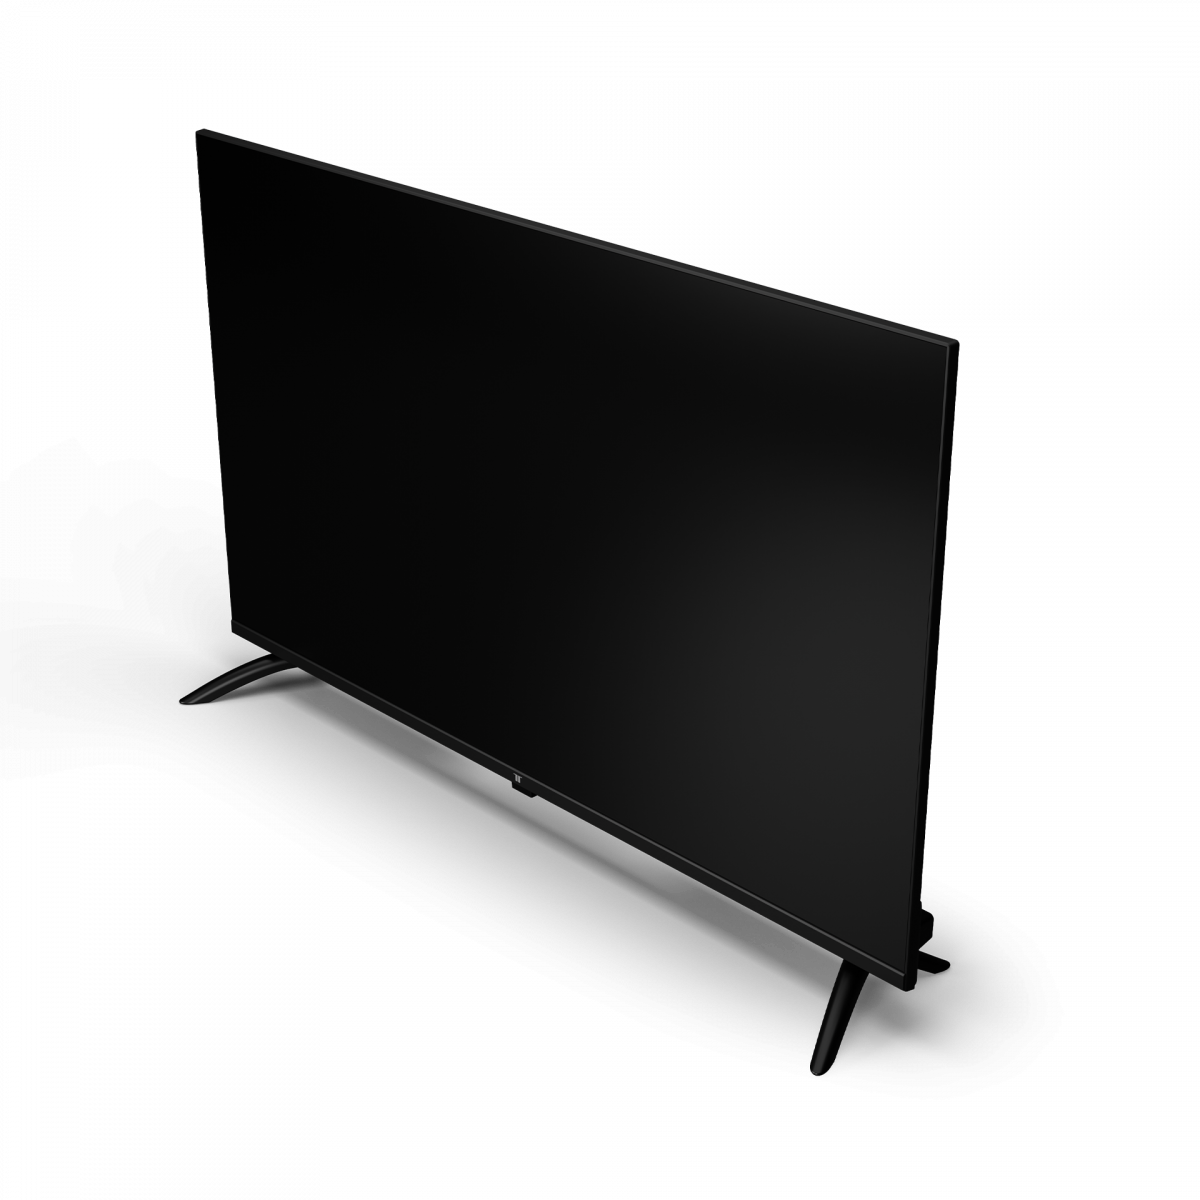 NP COPY - NOVI TESLA SMART LED TV 43 K43D301B2S Full HD Tesla TV  K43D301B2S, 43' TV LED, DLED, Android smart, DVB-T2/C, Full HD. CENA:  40.990,00 din